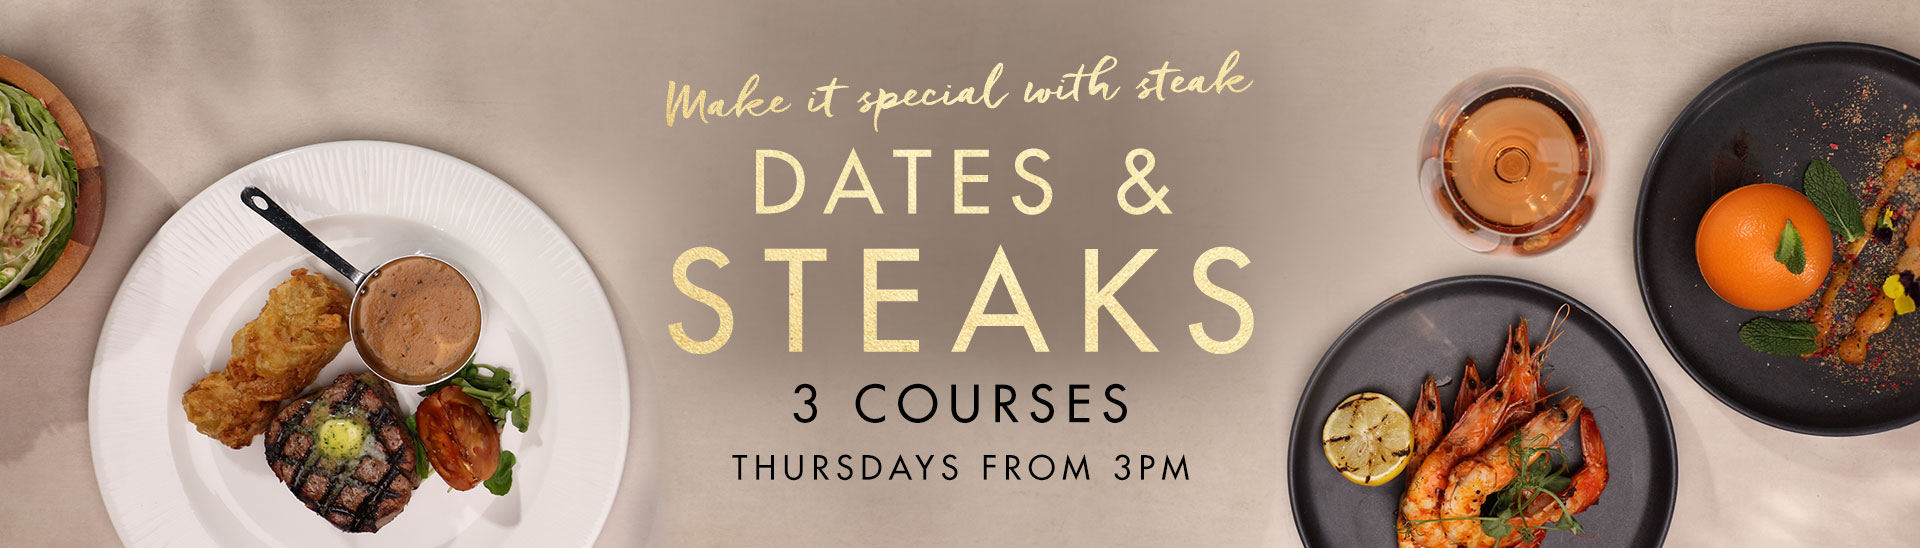 Dates & Steaks at Miller & Carter Worcester Park